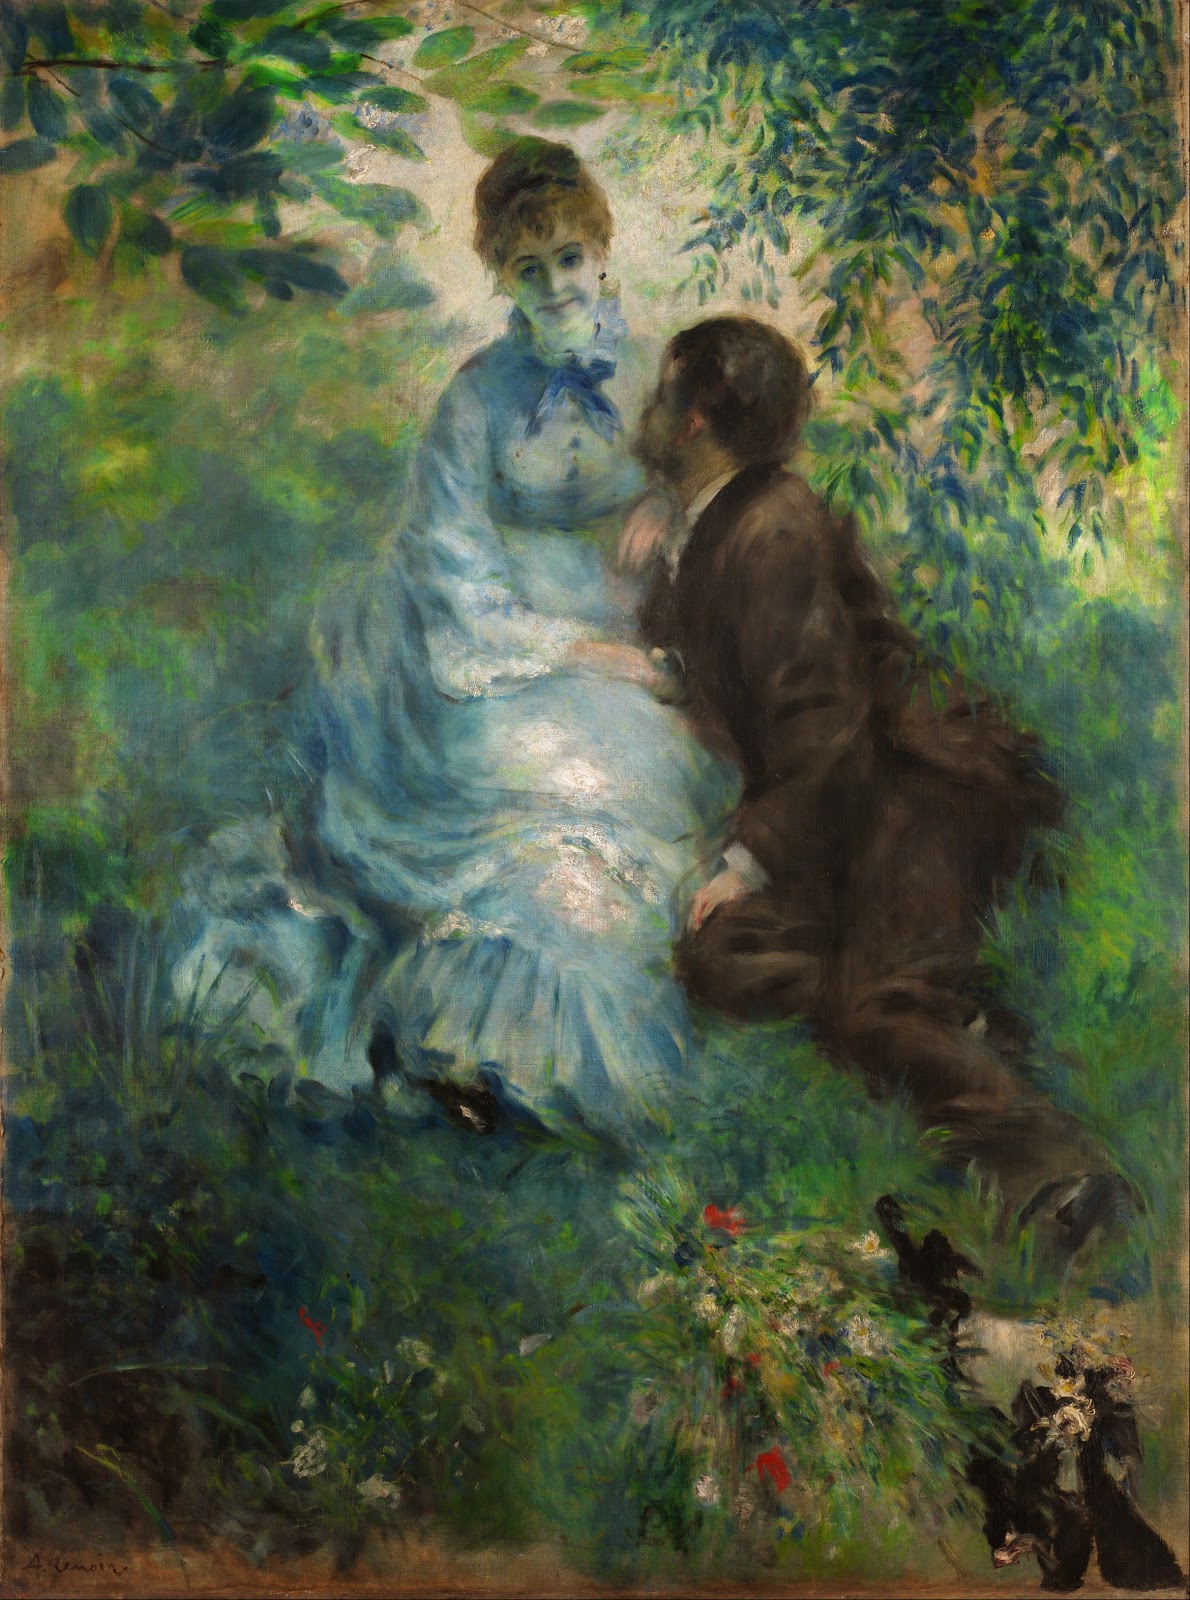 Pierre+Auguste+Renoir-1841-1-19 (305).jpg